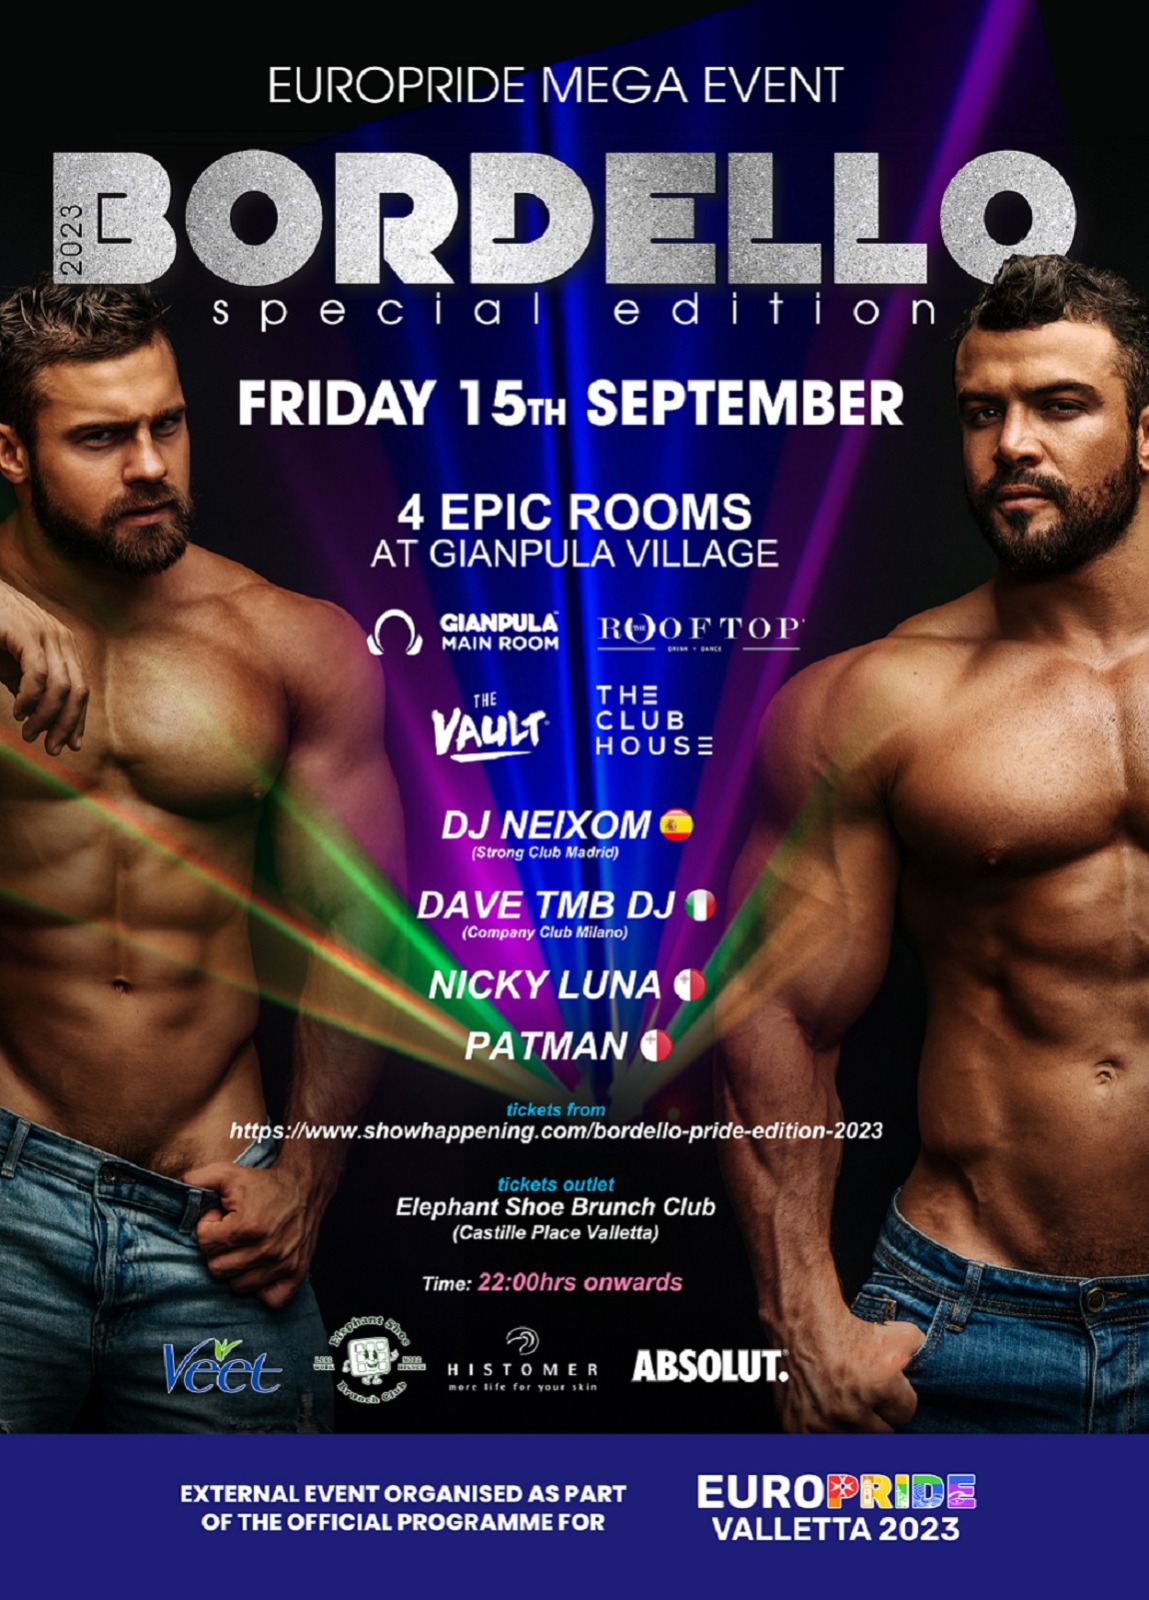 Bordello-Pride-Edition-2023 poster